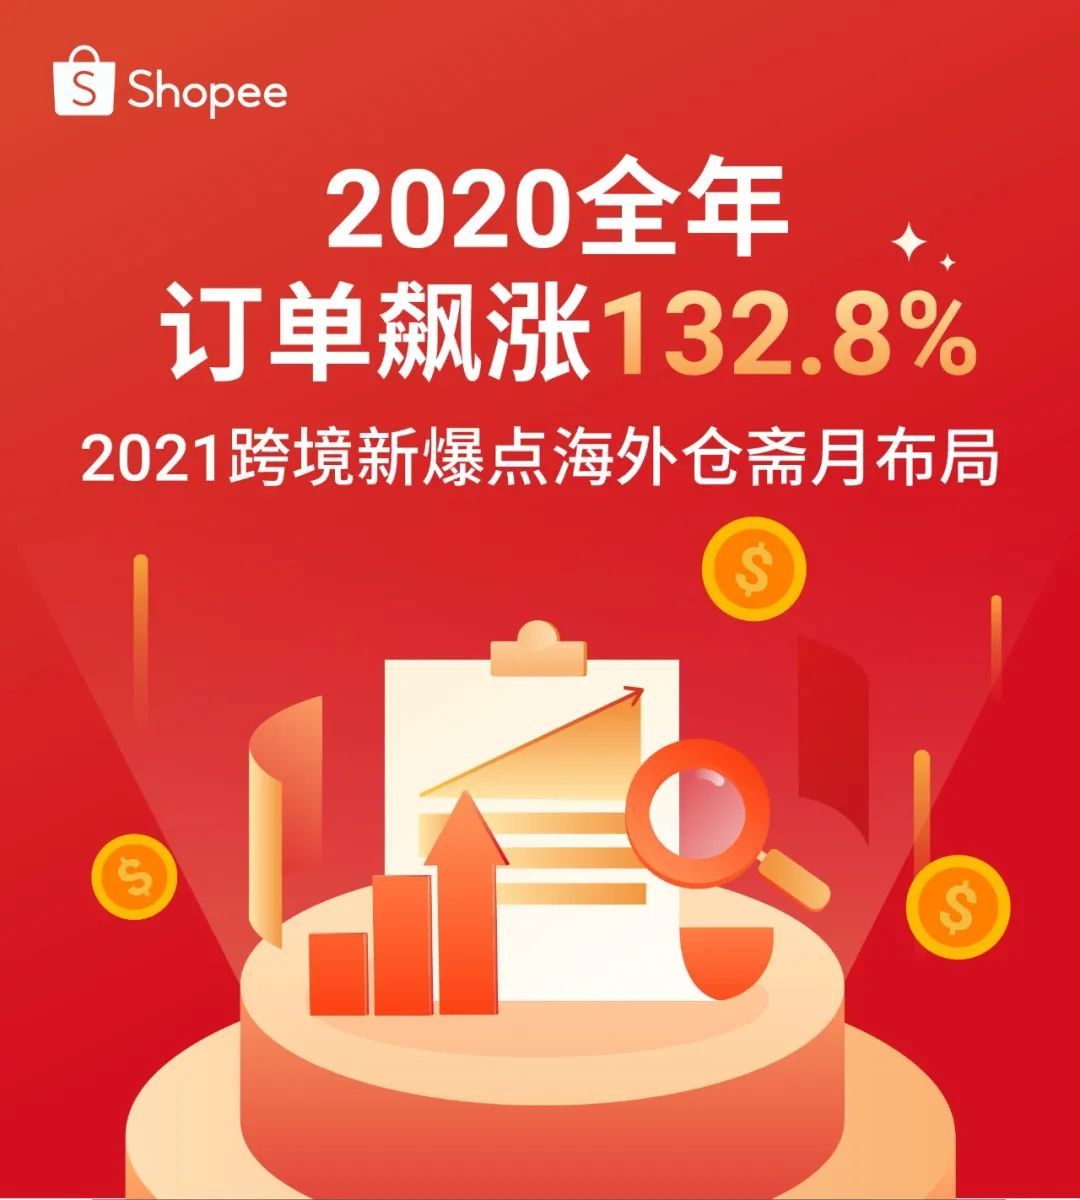 Shopee 2020成绩出炉, 全年订单飙涨132.8%! 抢斋月资源占2021爆单先机